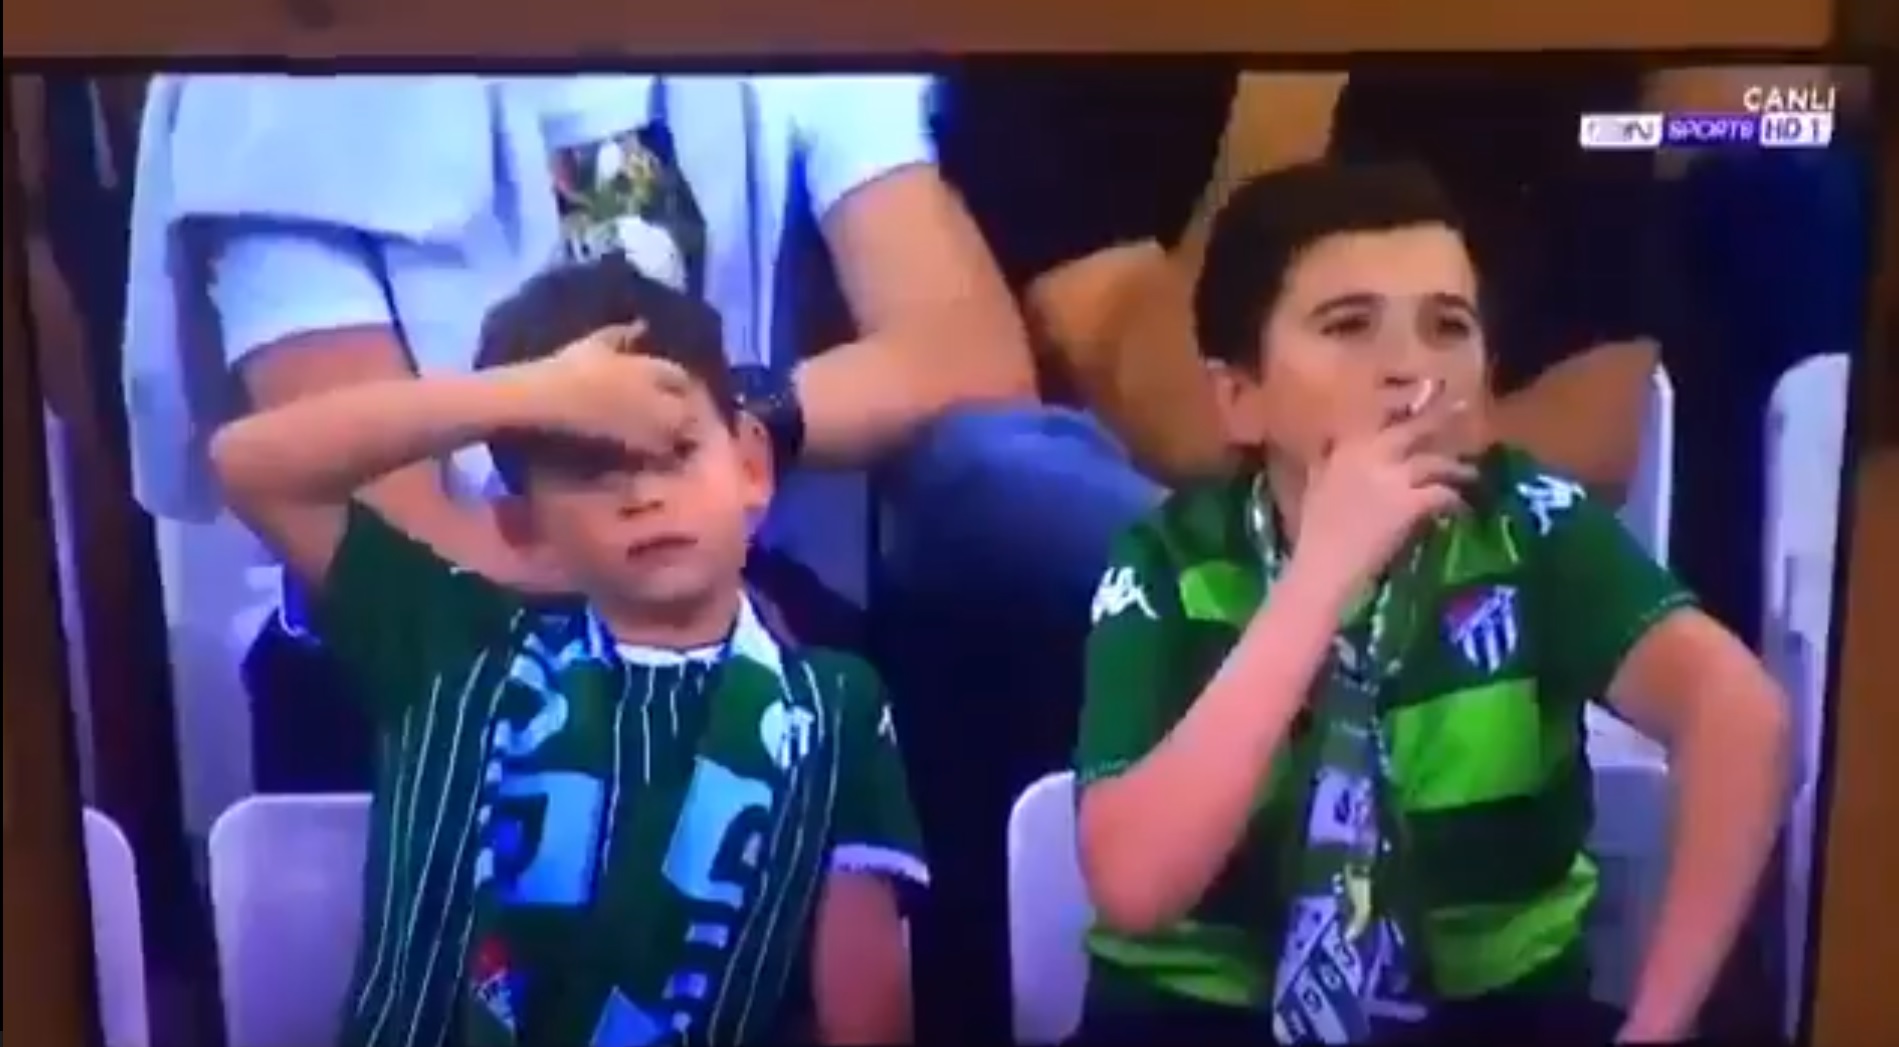 La vérité derrière la vidéo de "l'enfant" en train de fumer lors d'un match de football